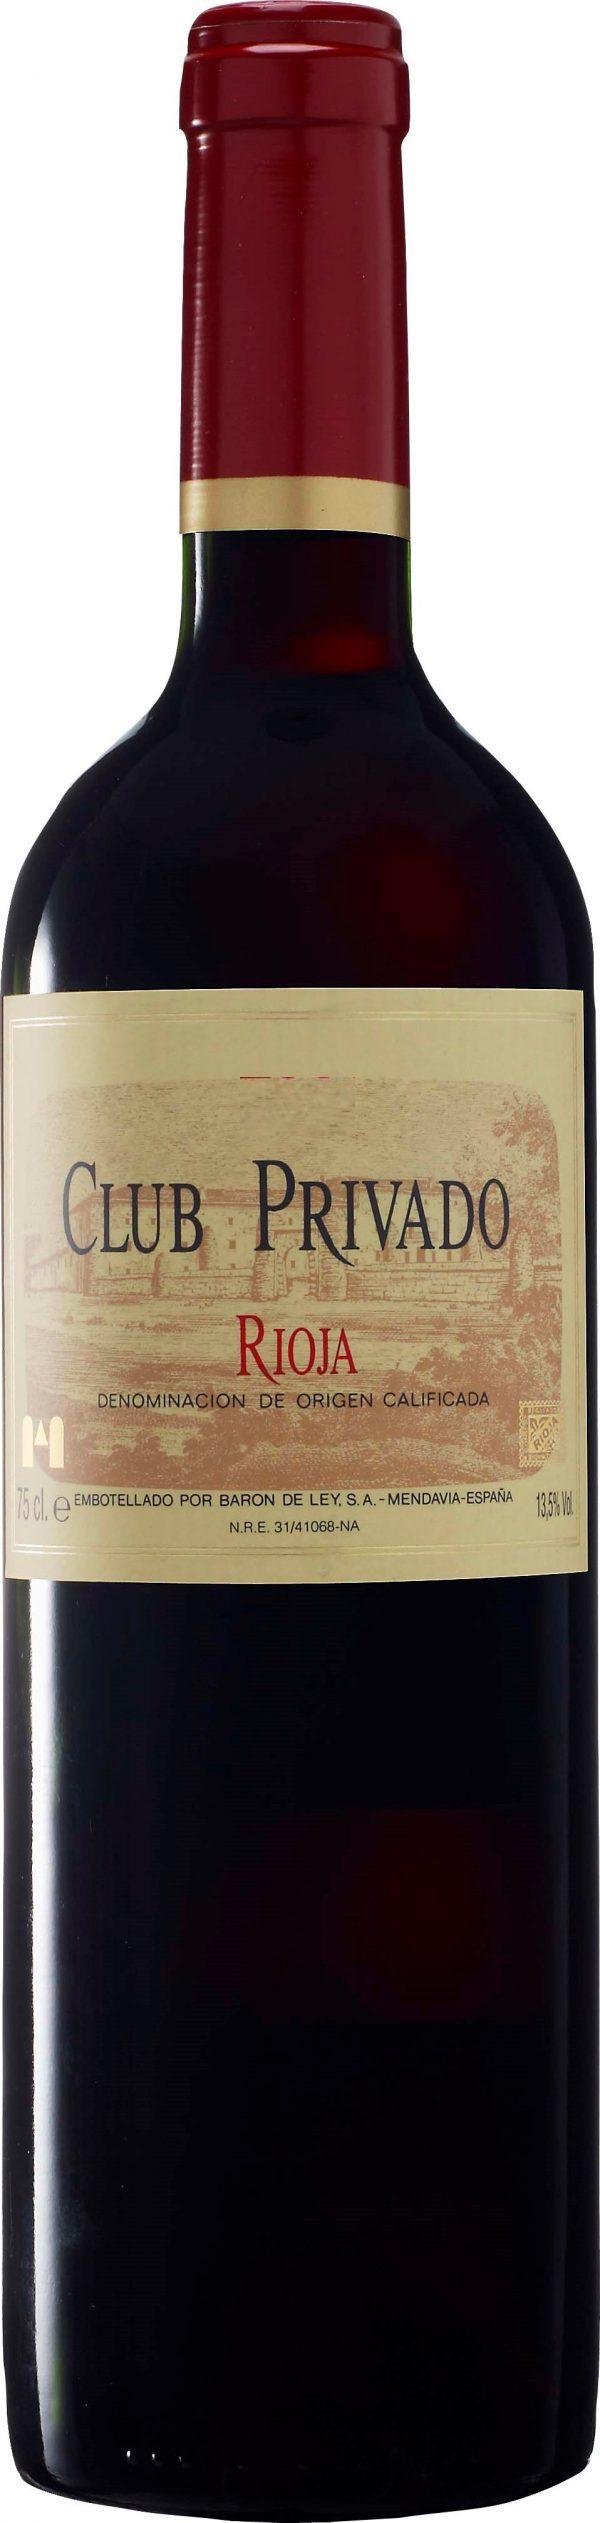 Baron de Ley Rioja Club Privado 2016 Rioja, Spanien Intensivt röd färg. Doften är fruktig, med inslag av stall, vanilj och mörka bär.